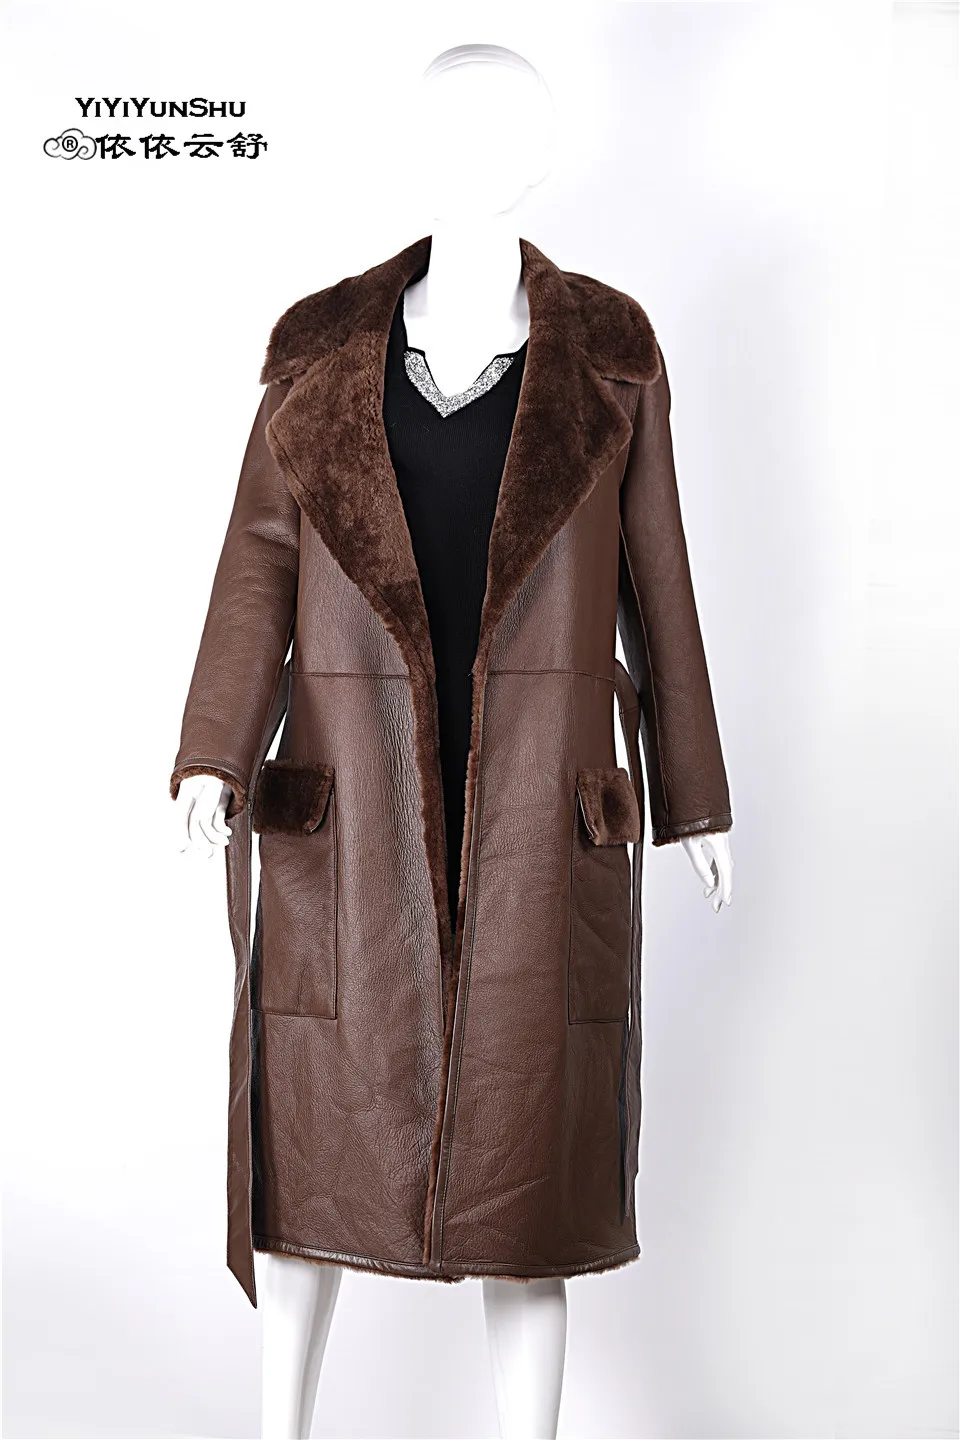 Yiyyunshu Мериносовая овечья шерсть двустороннее меховое пальто женское зимнее длинное толстое овечье меховое пальто из натуральной кожи меховая куртка женская